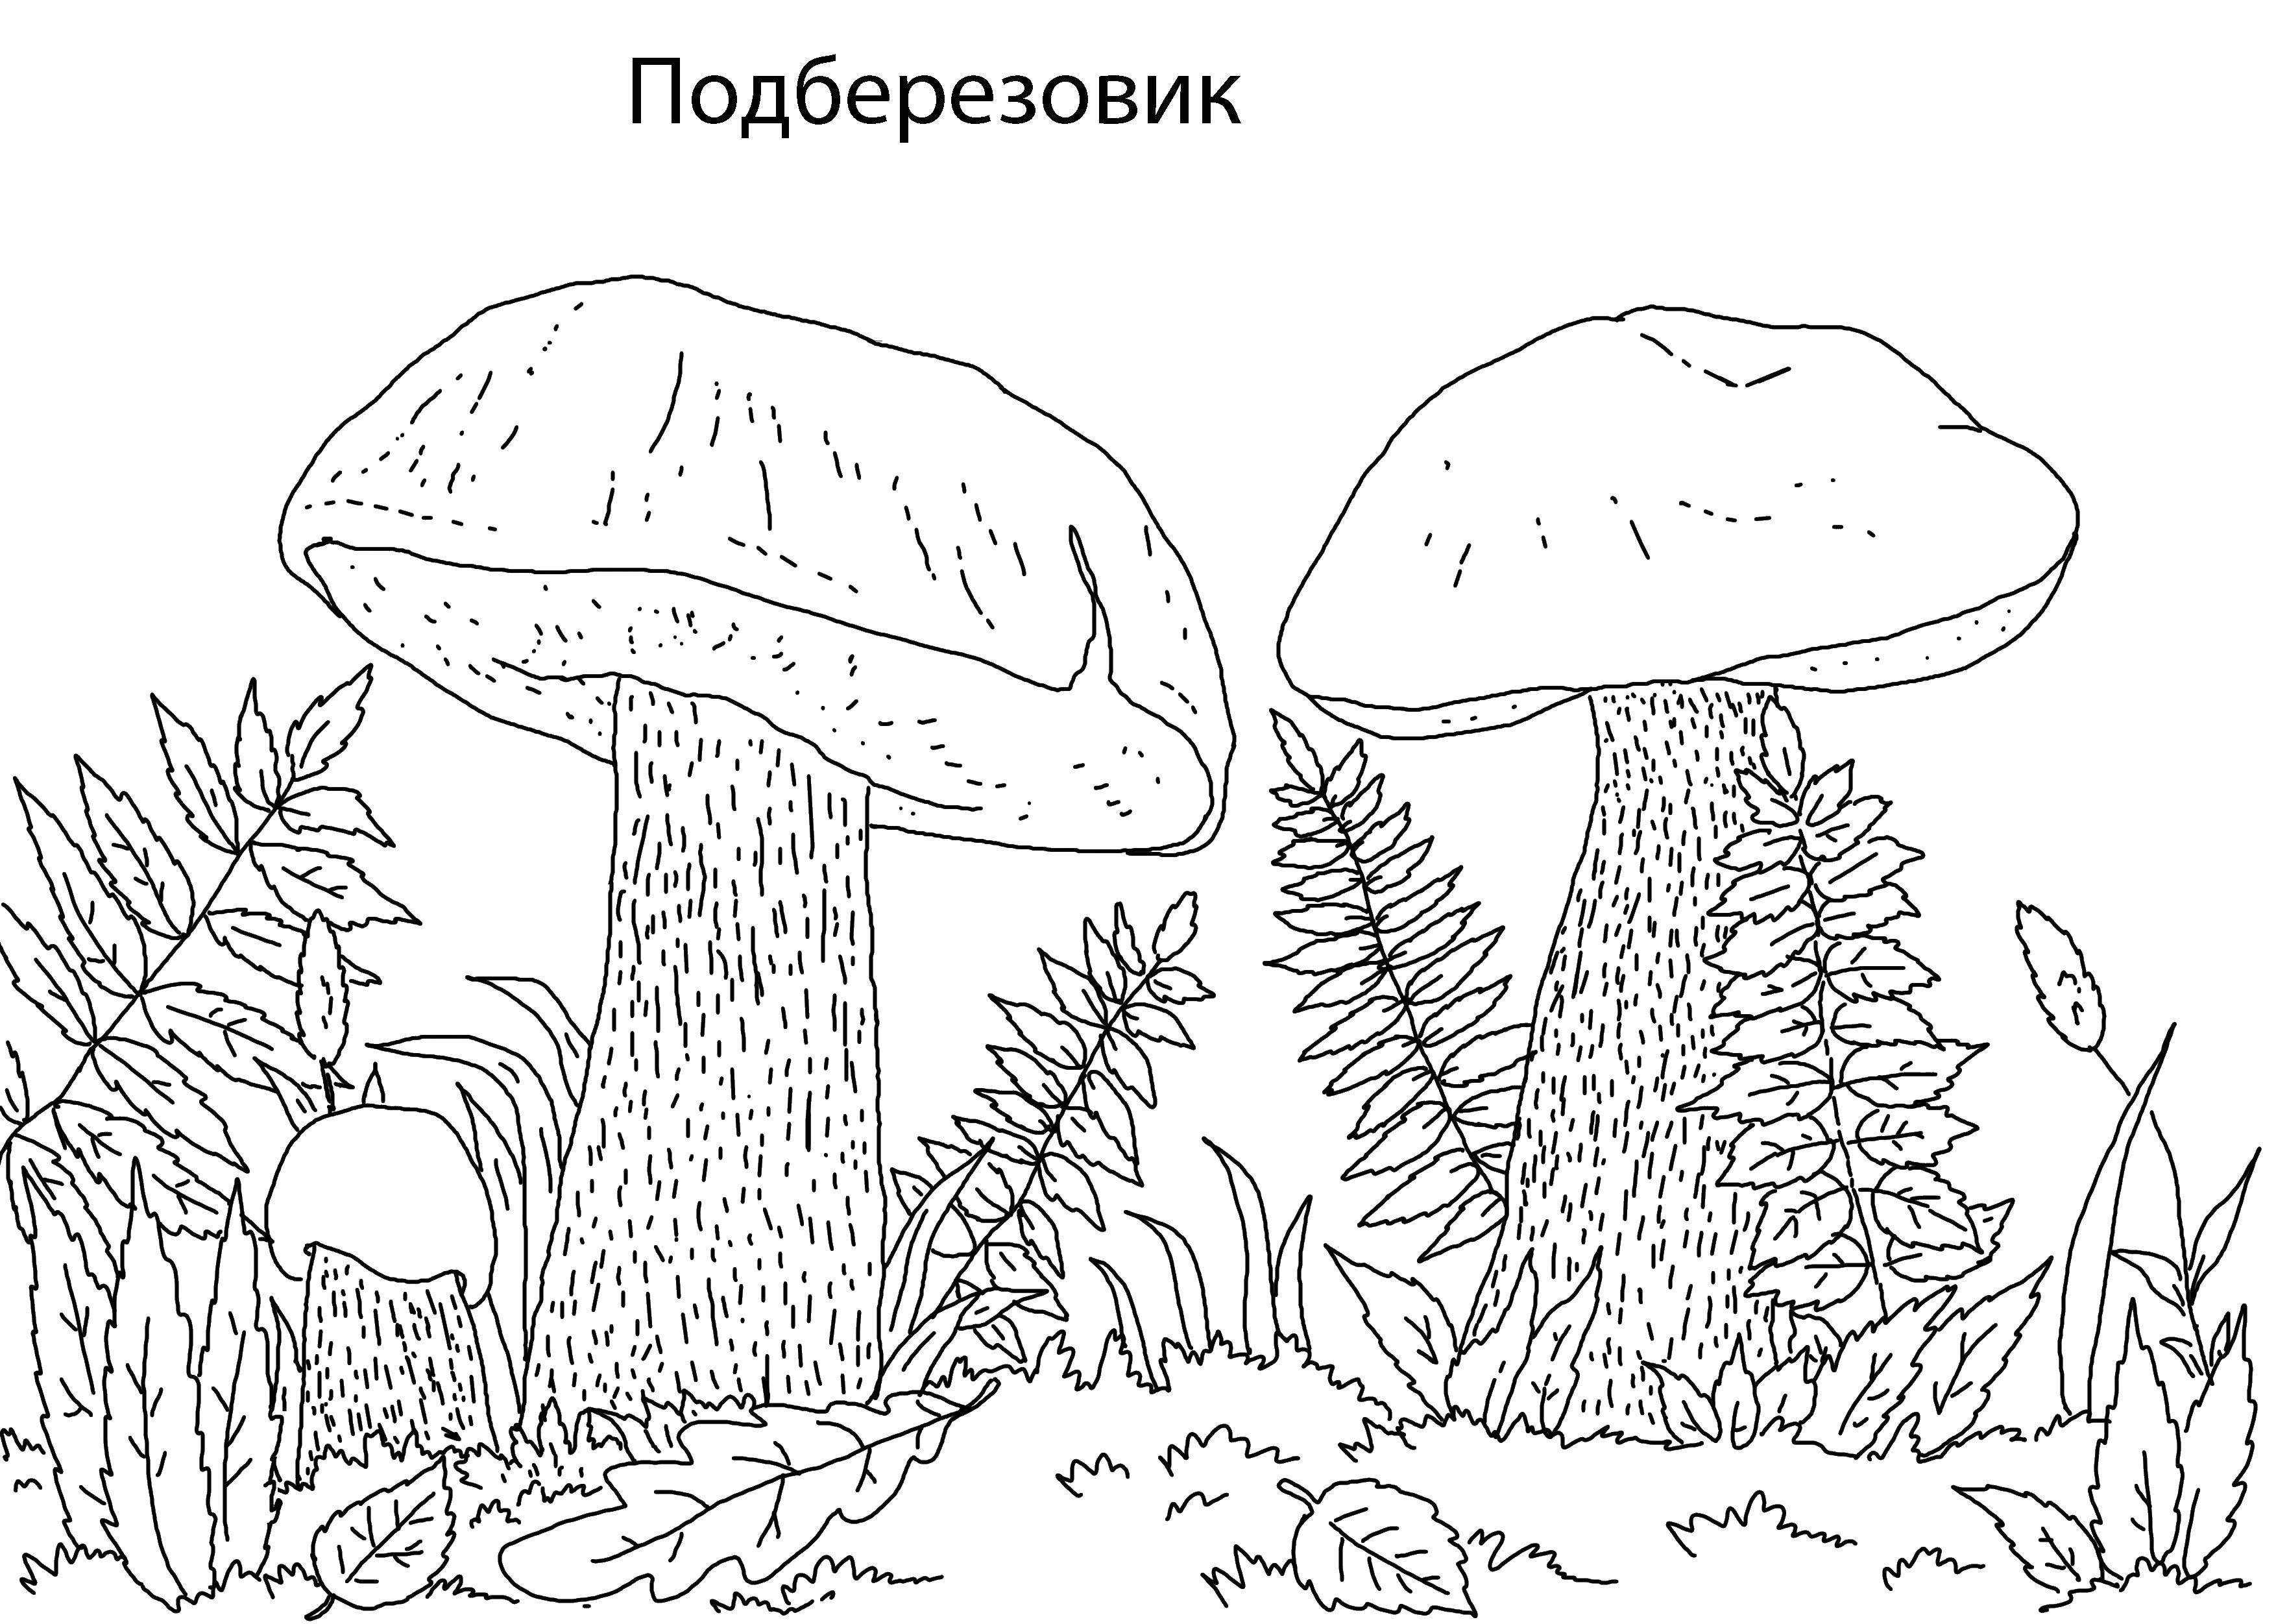 Coloring Mushroom boletus. Category mushrooms. Tags:  mushroom, boletus.